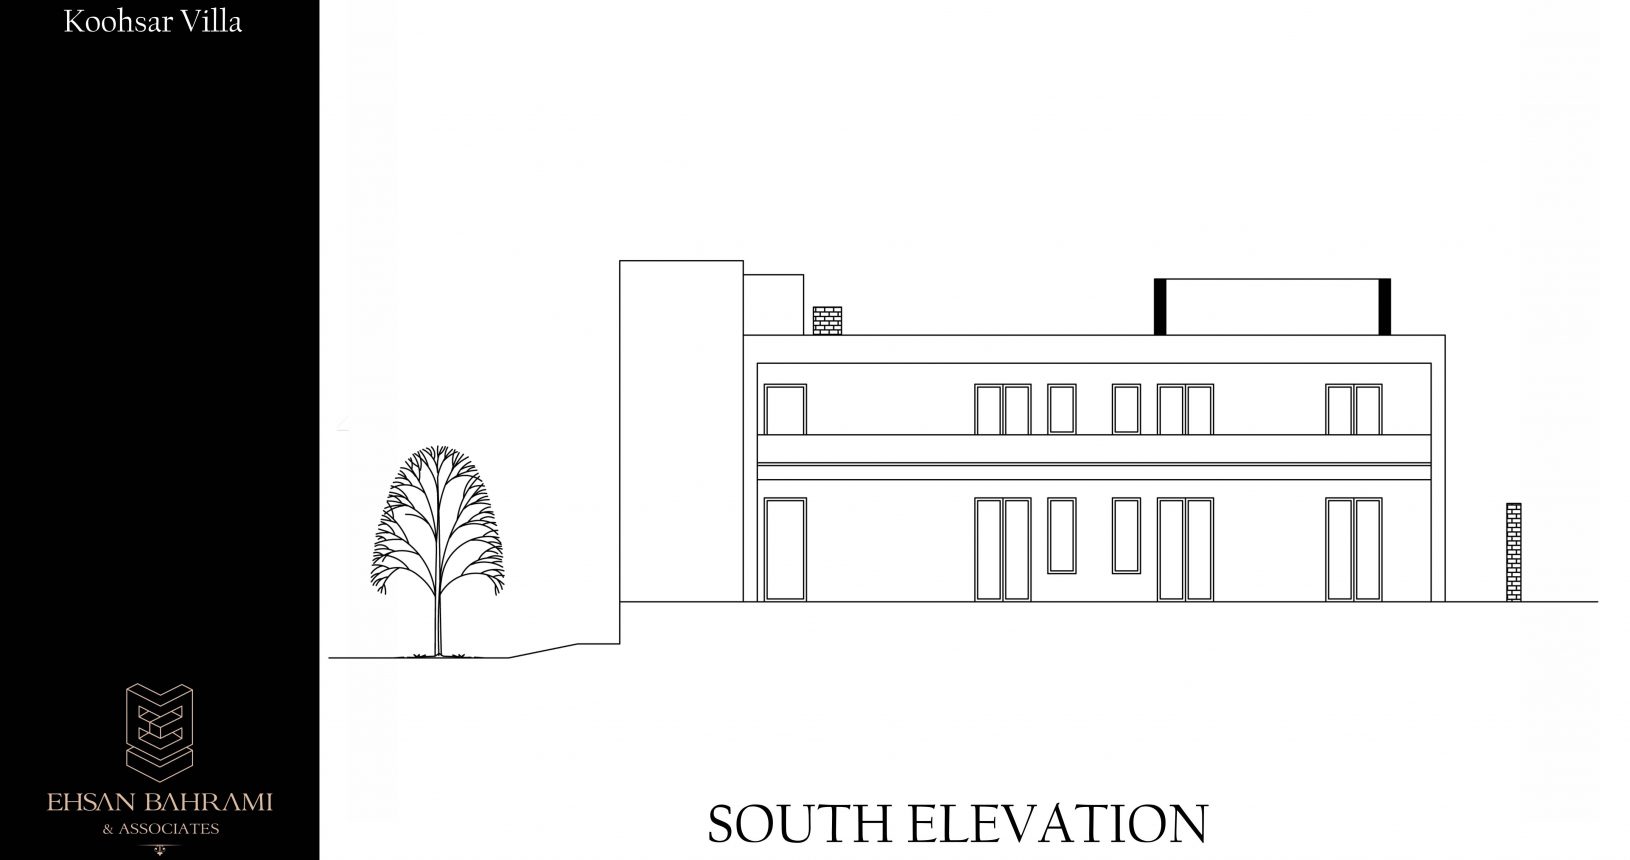 Koohsar Villa South Elevation